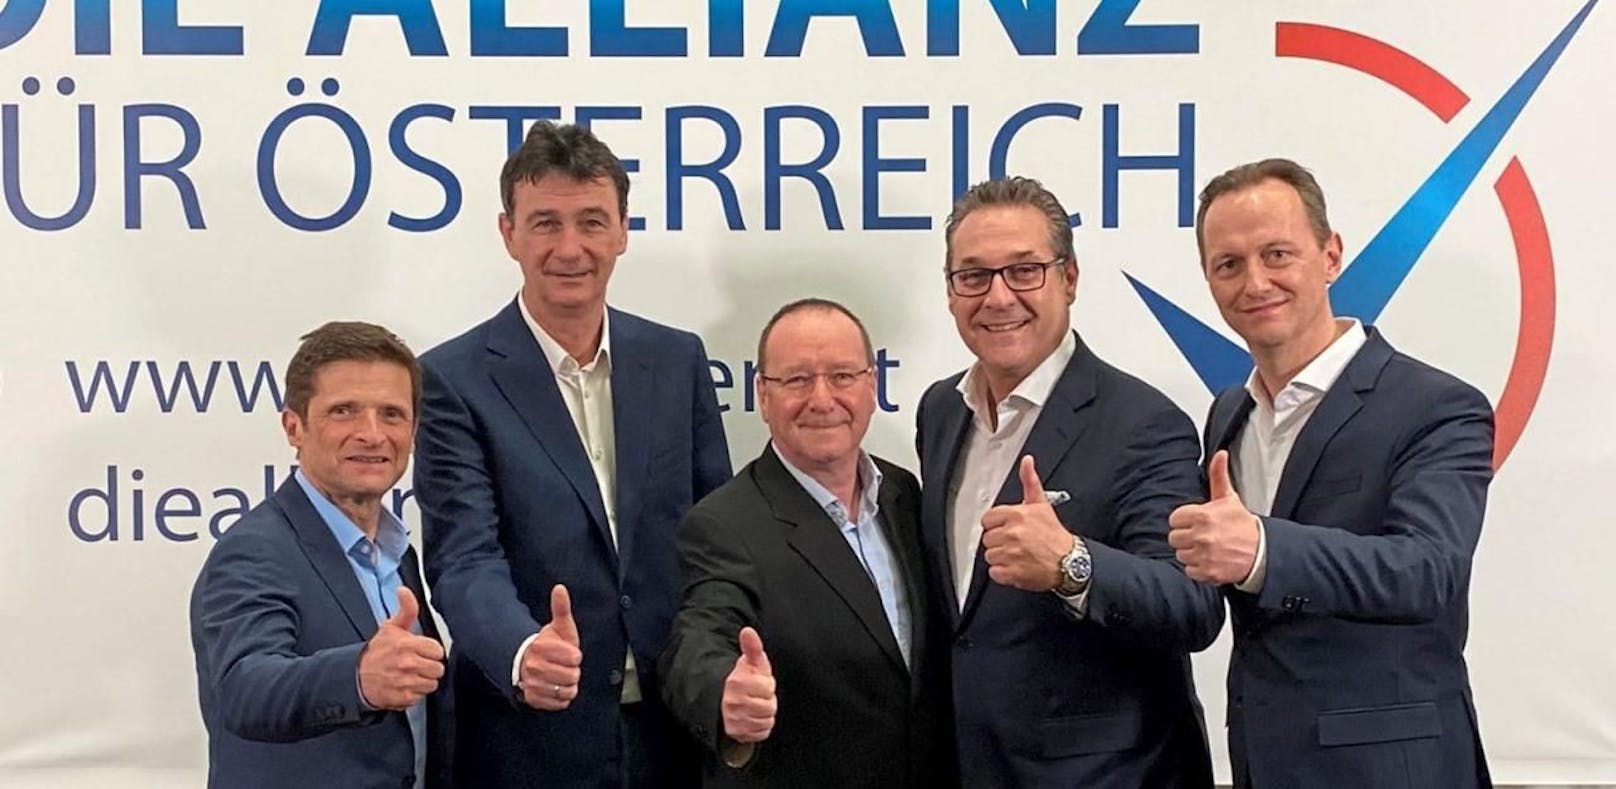 Gerhard Wegscheidler (in der Mitte), Bezirksrat in Meidling, ist neuestes Mitglied der Allianz für Österreich. Auch er war bisher FPÖ-Mitglied.